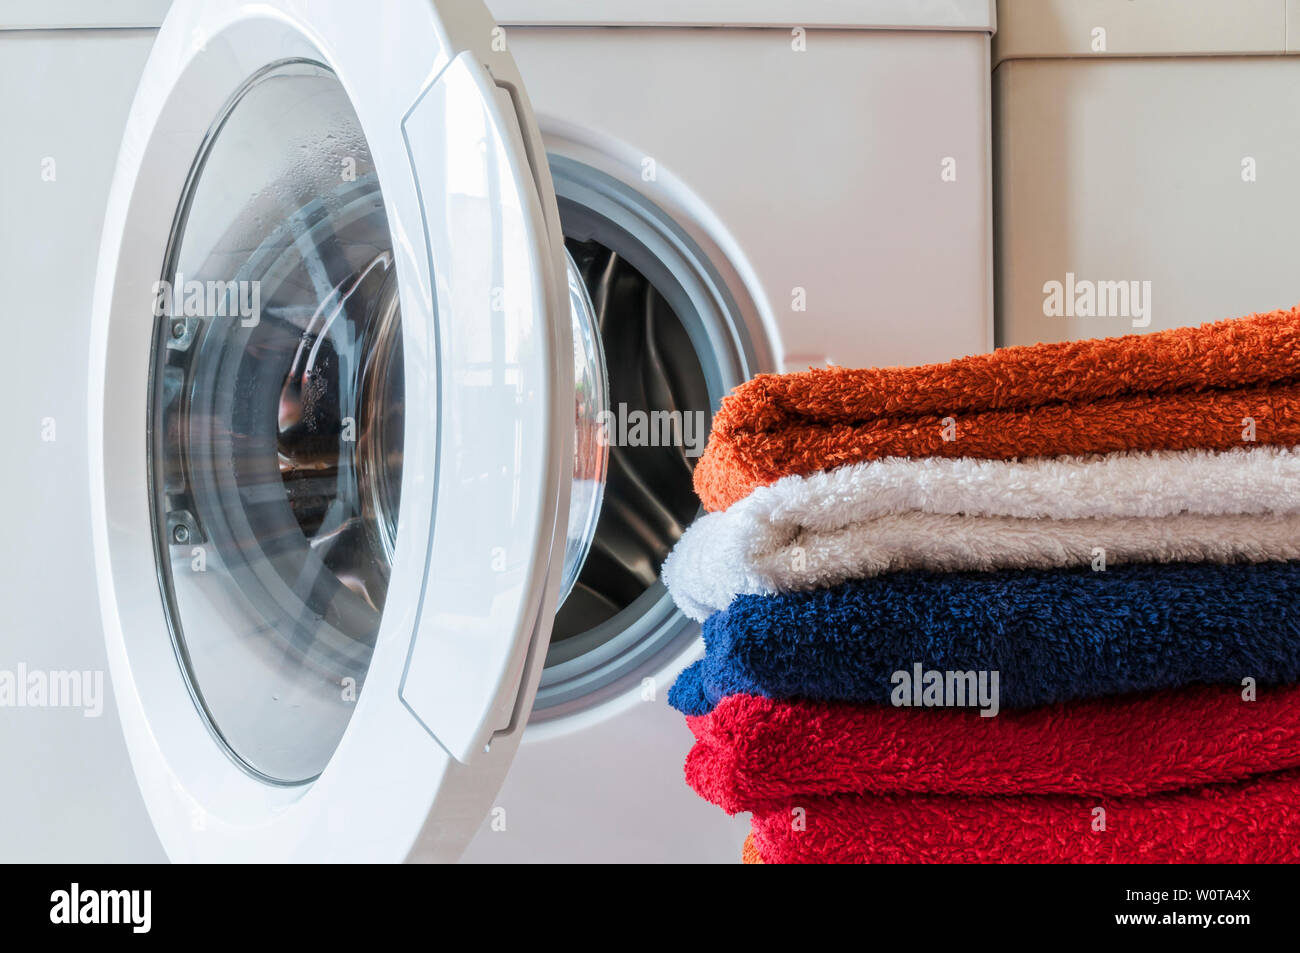 Waschservice, Hausarbeit, Waschmaschine und ein Stapel bunter Handtuecher. Stock Photo